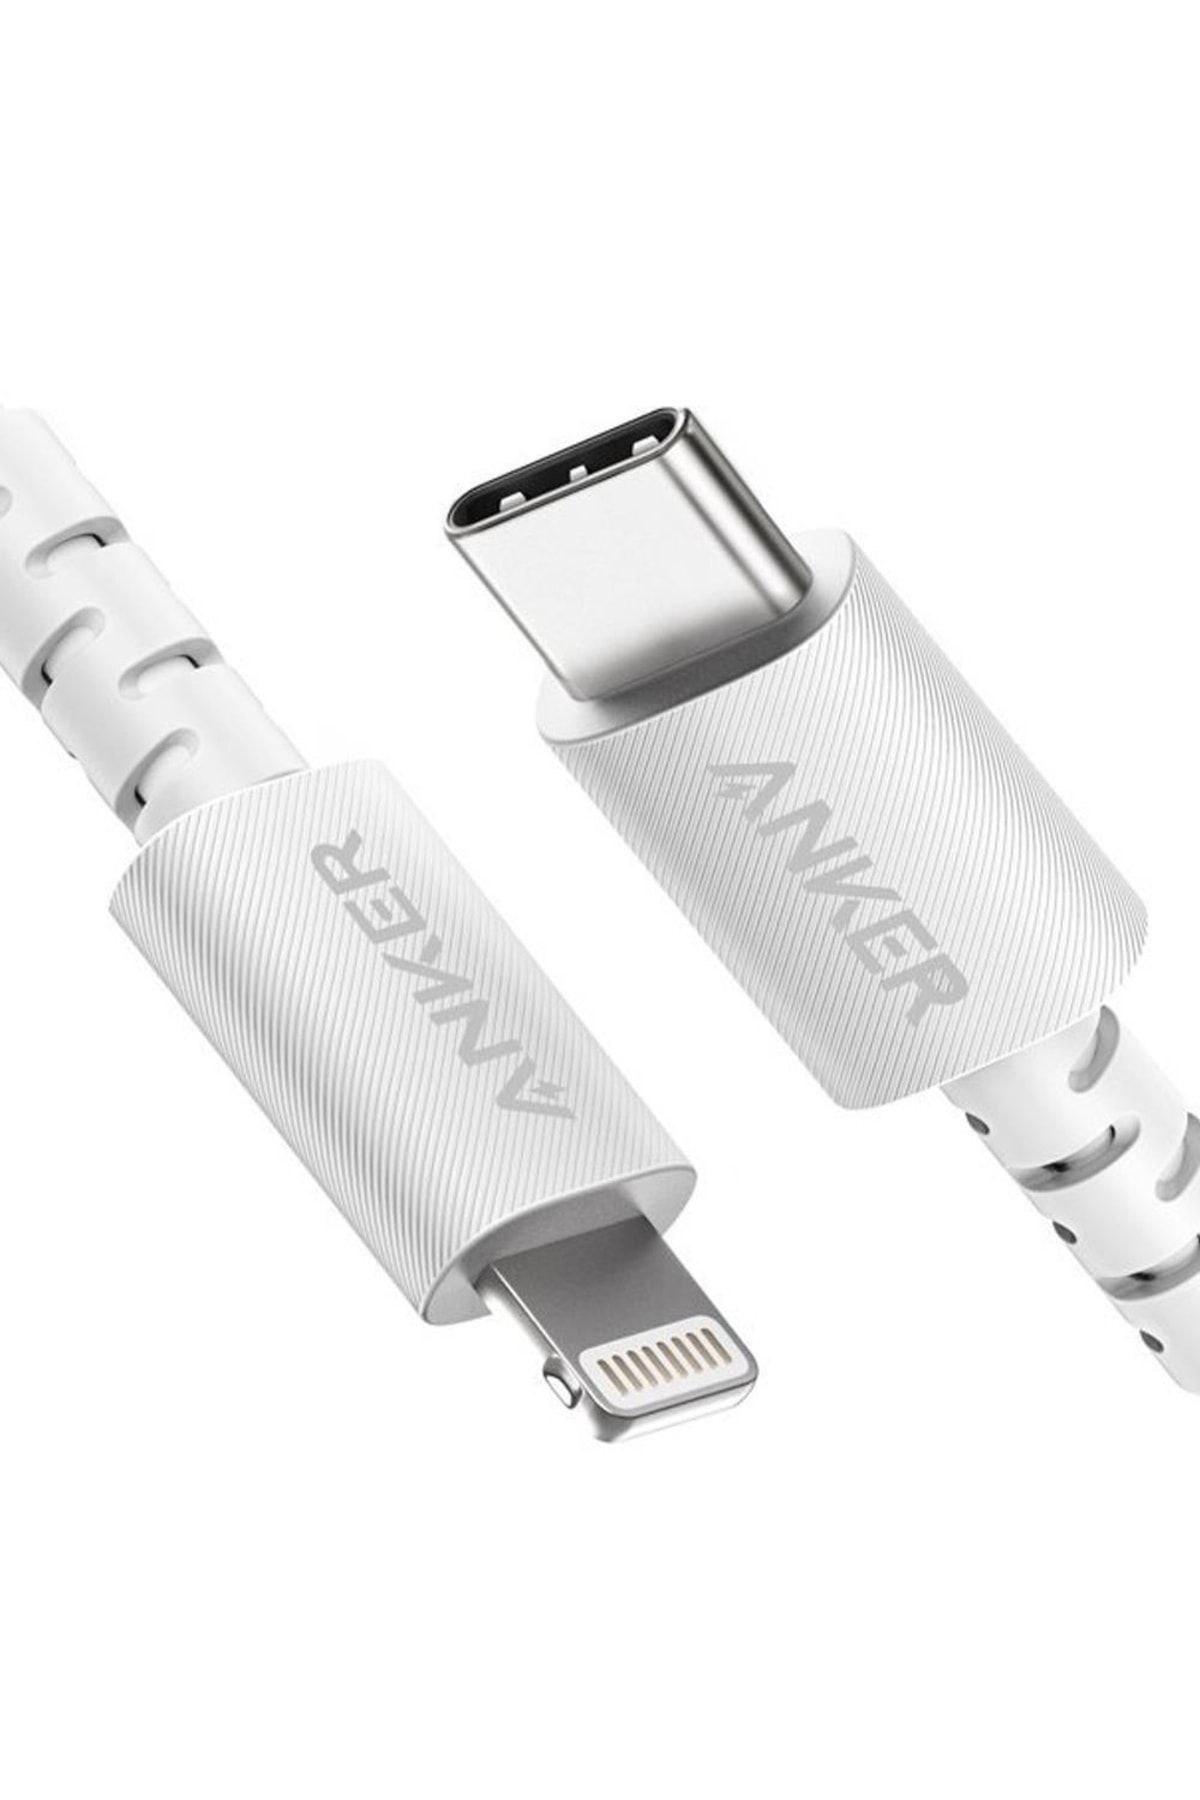 Anker Powerline Select Type-c To Lightning Kablo 1.8m - Beyaz